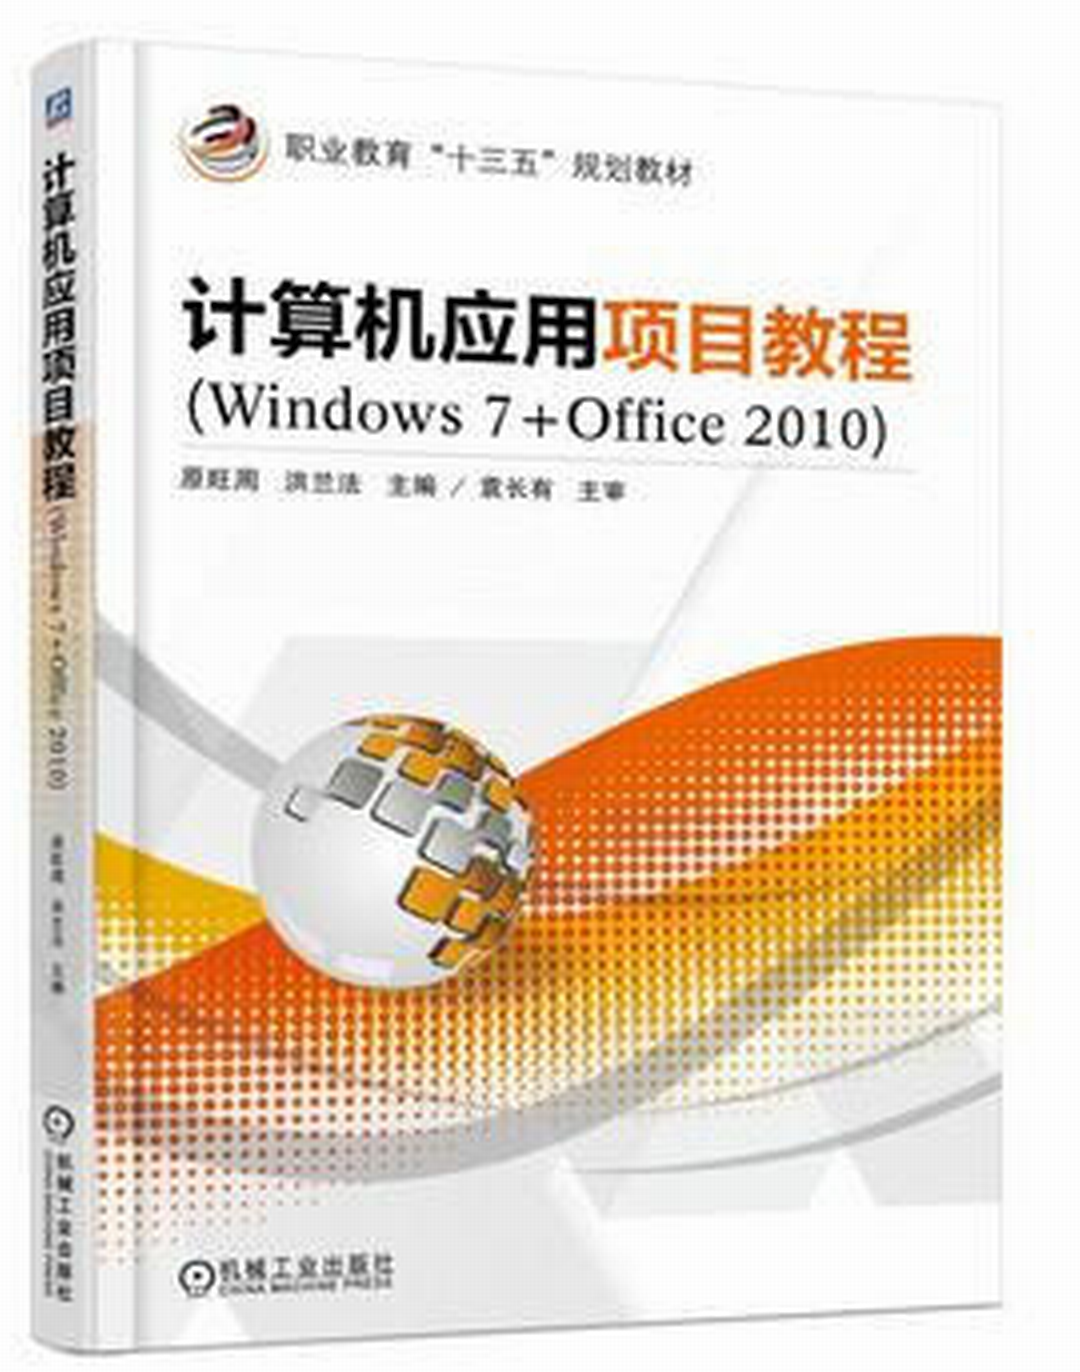 計算機套用項目教程(Windows 7+Office 2010)